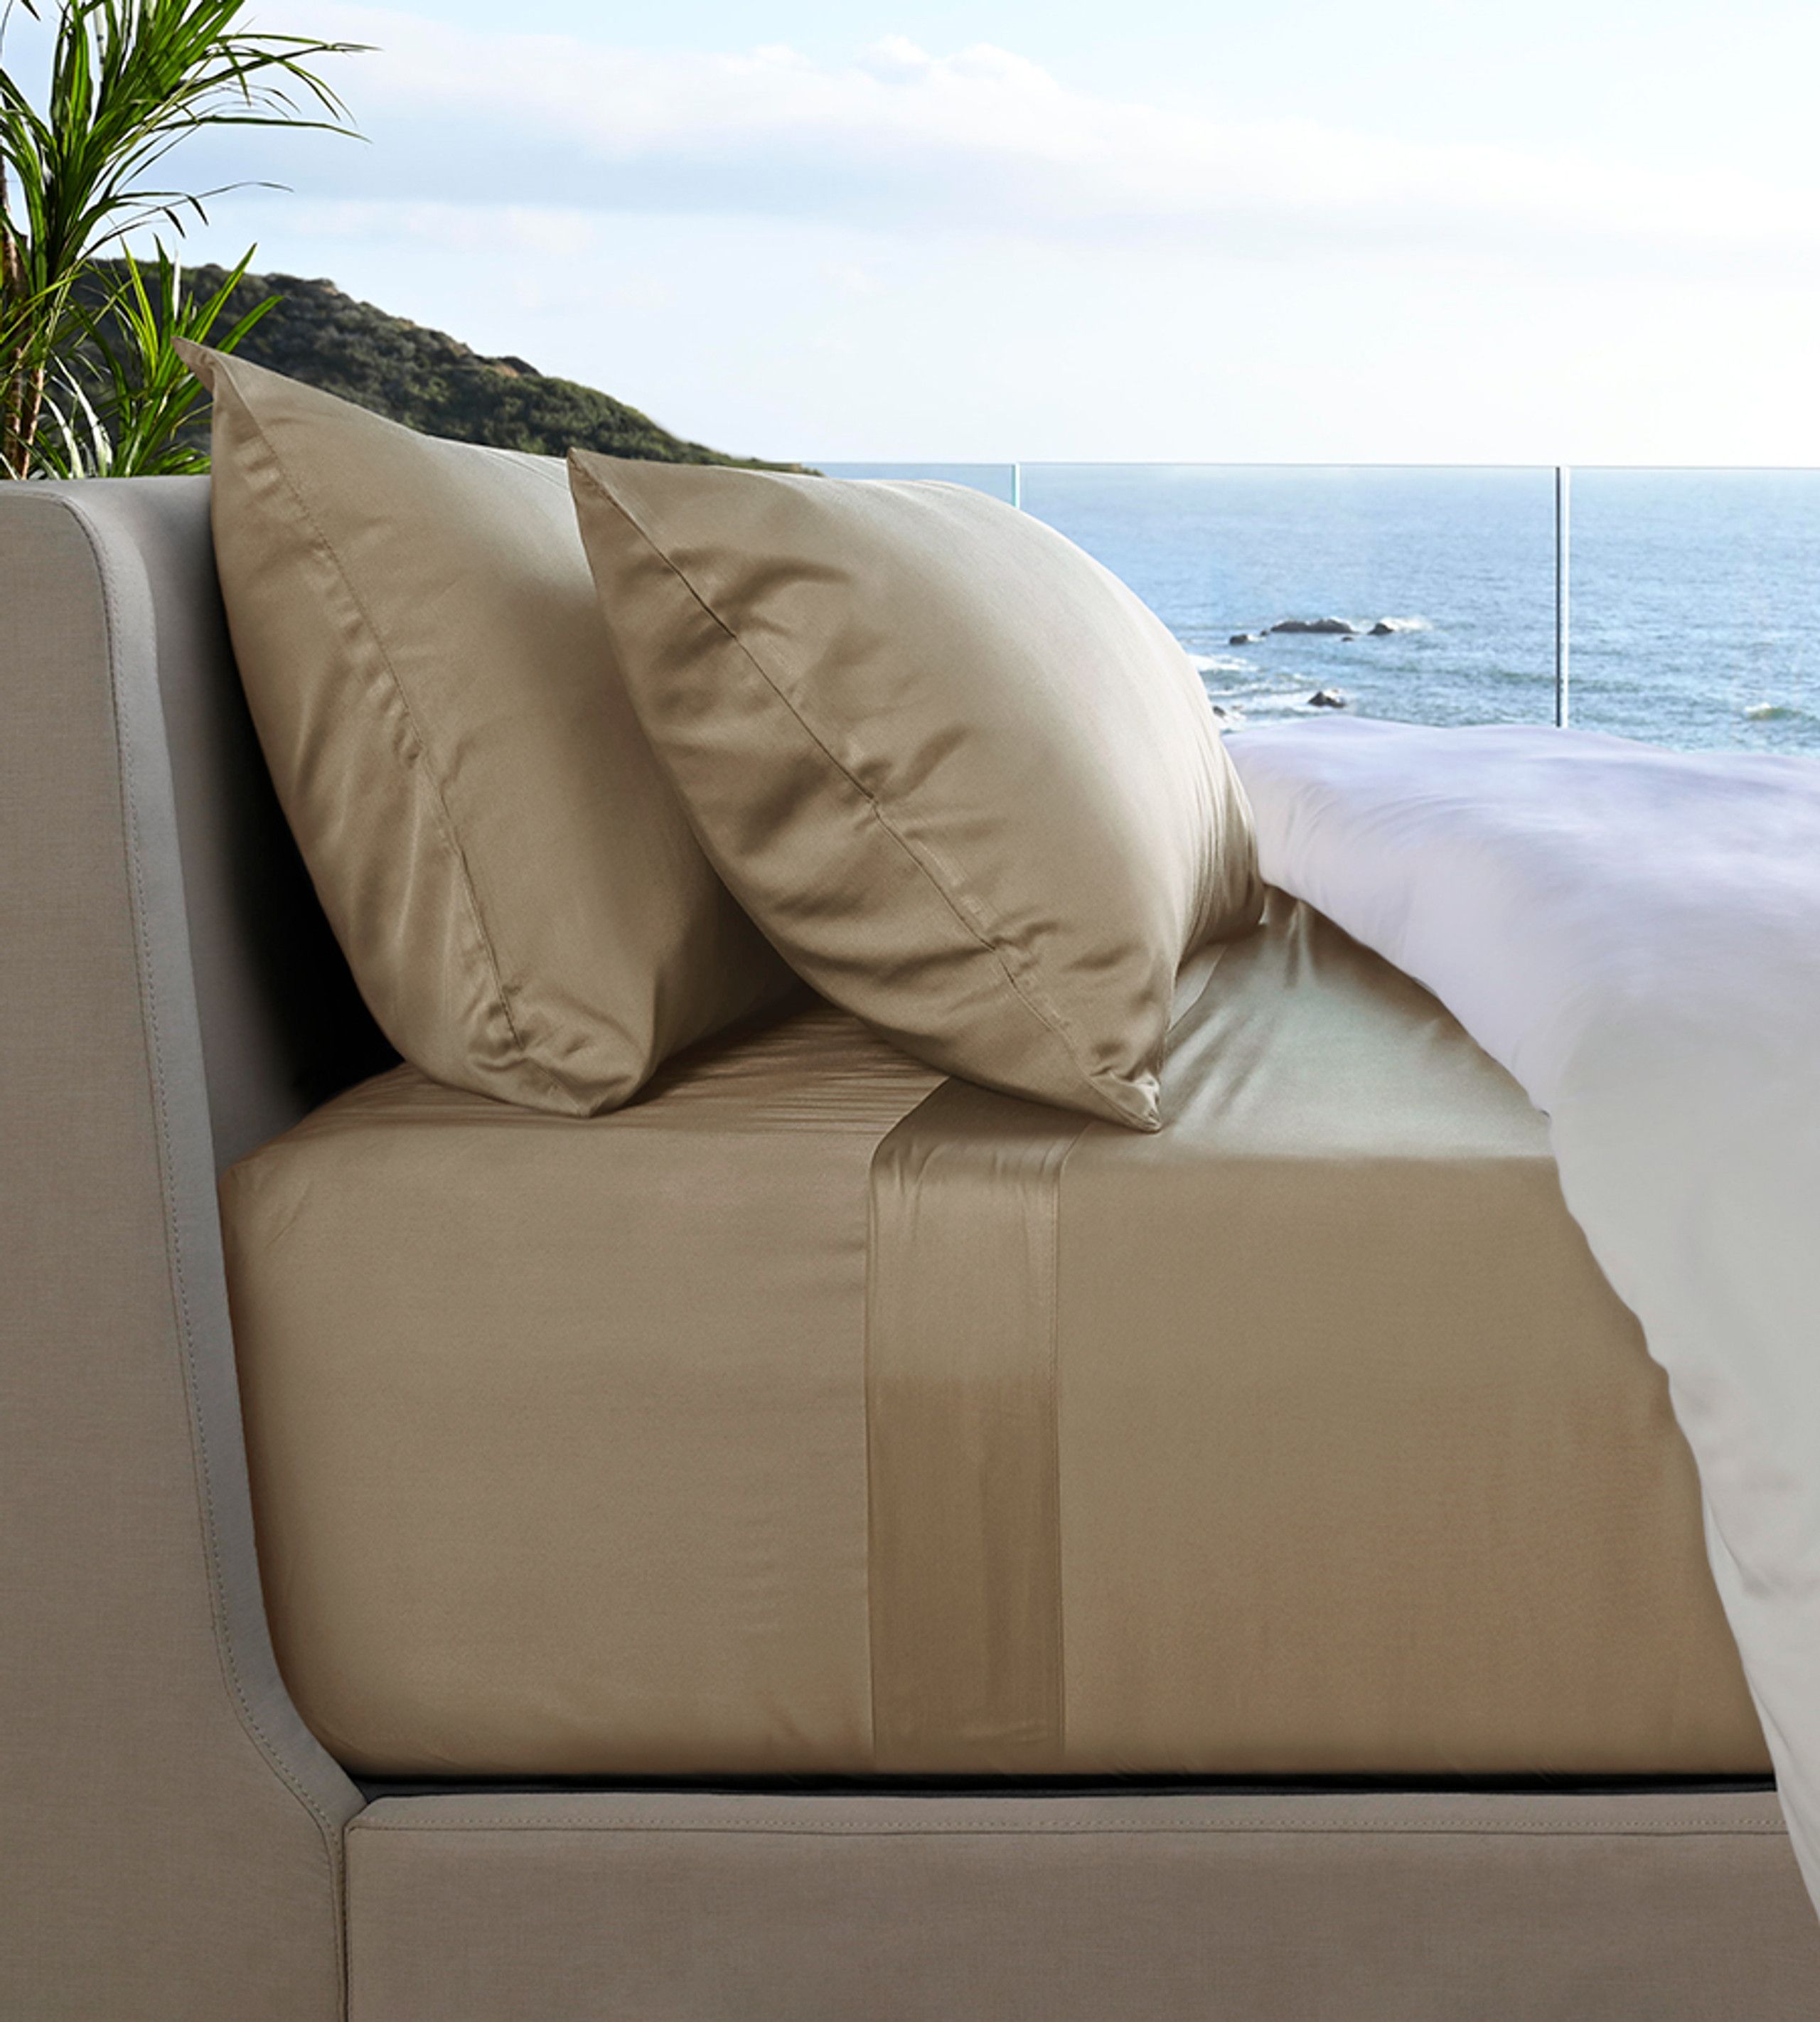 Resort Bamboo Bed Sheets | Cariloha